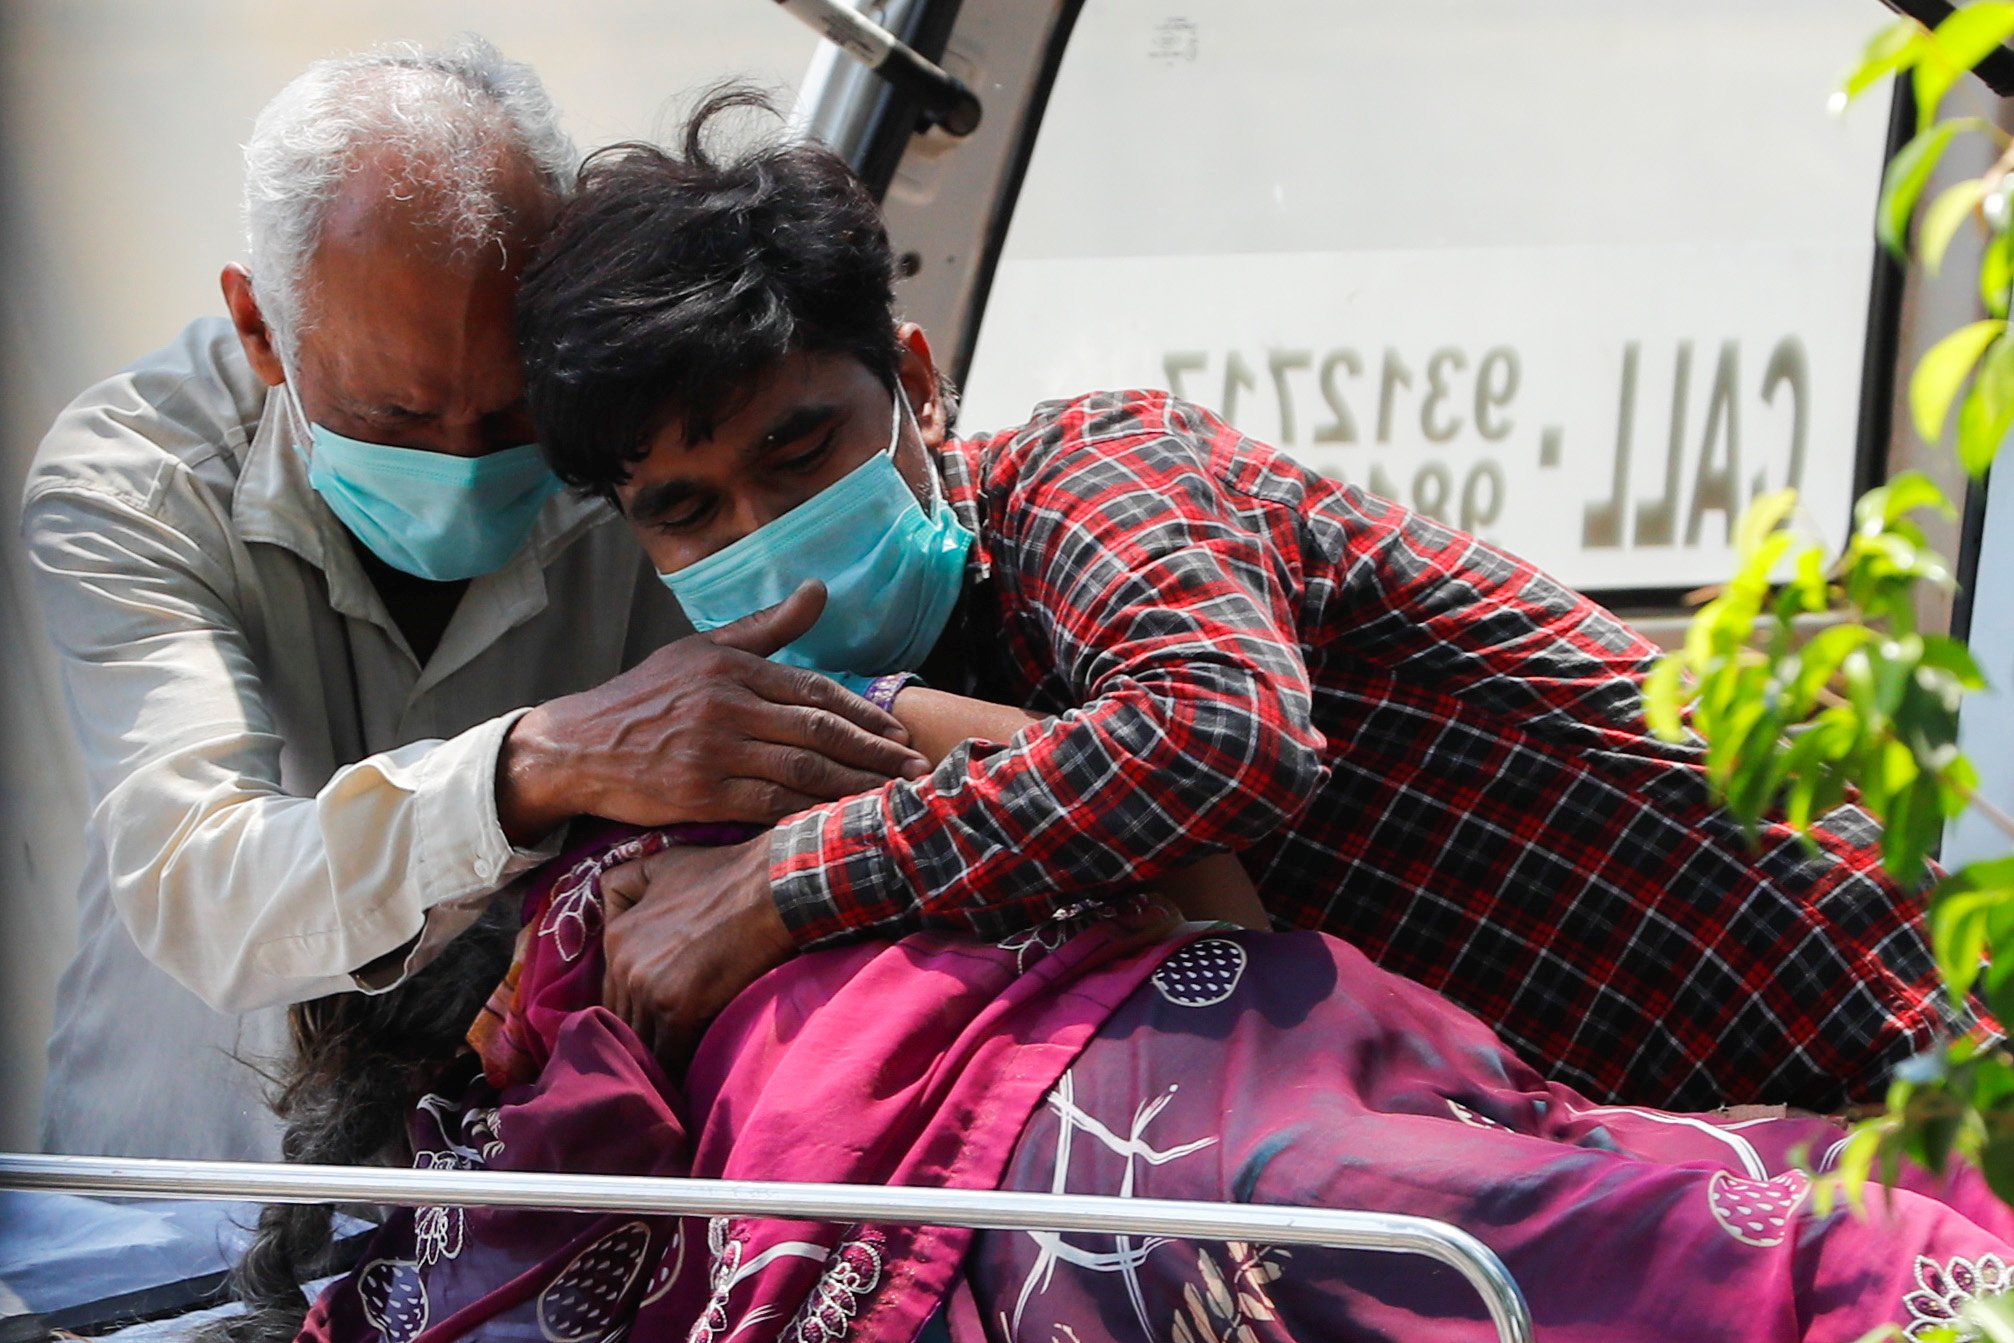 दिल्ली के लोकनायक जयप्रकाश नारायण अस्पताल के बाहर कोविड-19 से एक महिला की मौत के बाद शोक संतप्त परिवार. (फोटोः राॅयटर्स)